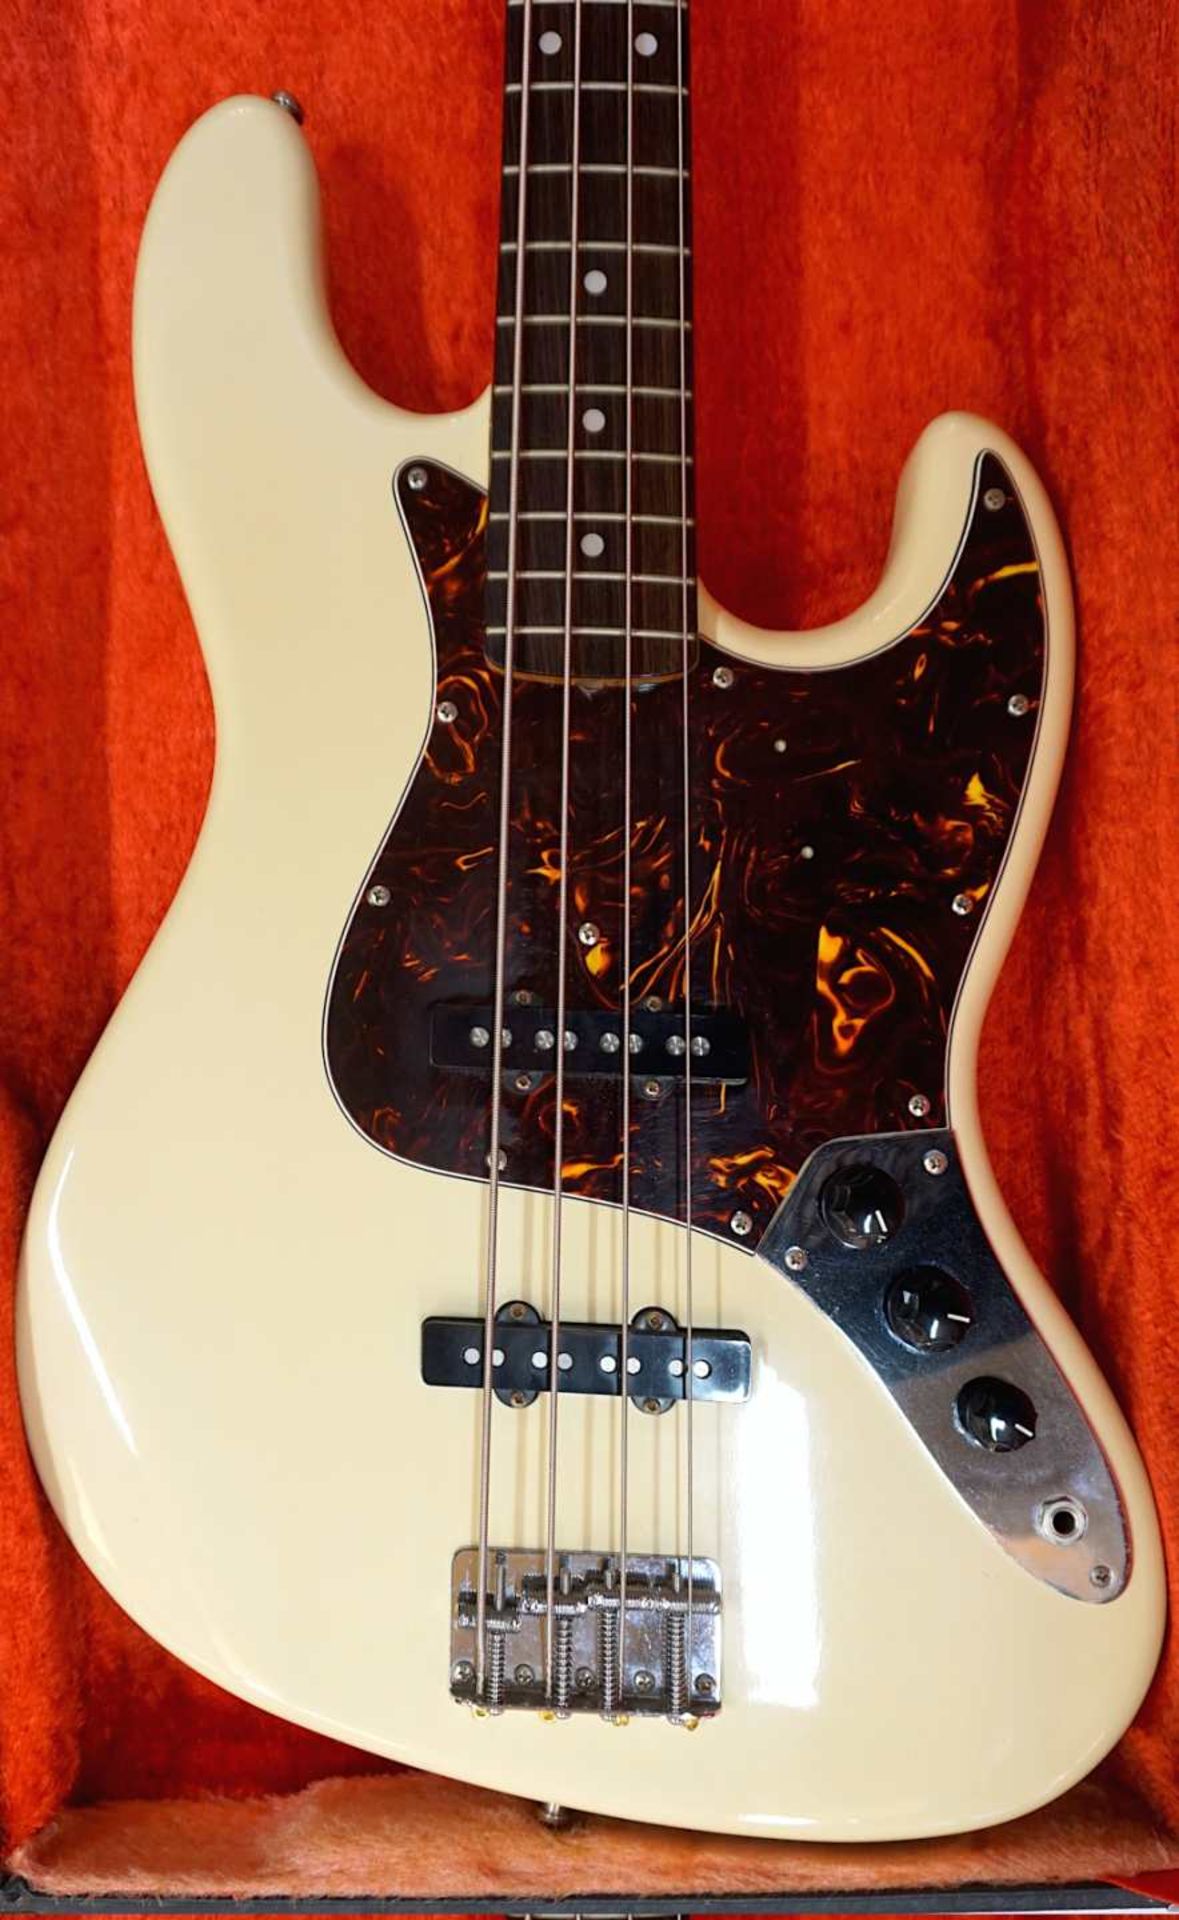 1 E-Gitarre TOKAI "Jazz Sound/Electric Bass" Seriennummer: 1023999, beige/braun lackie - Bild 3 aus 4